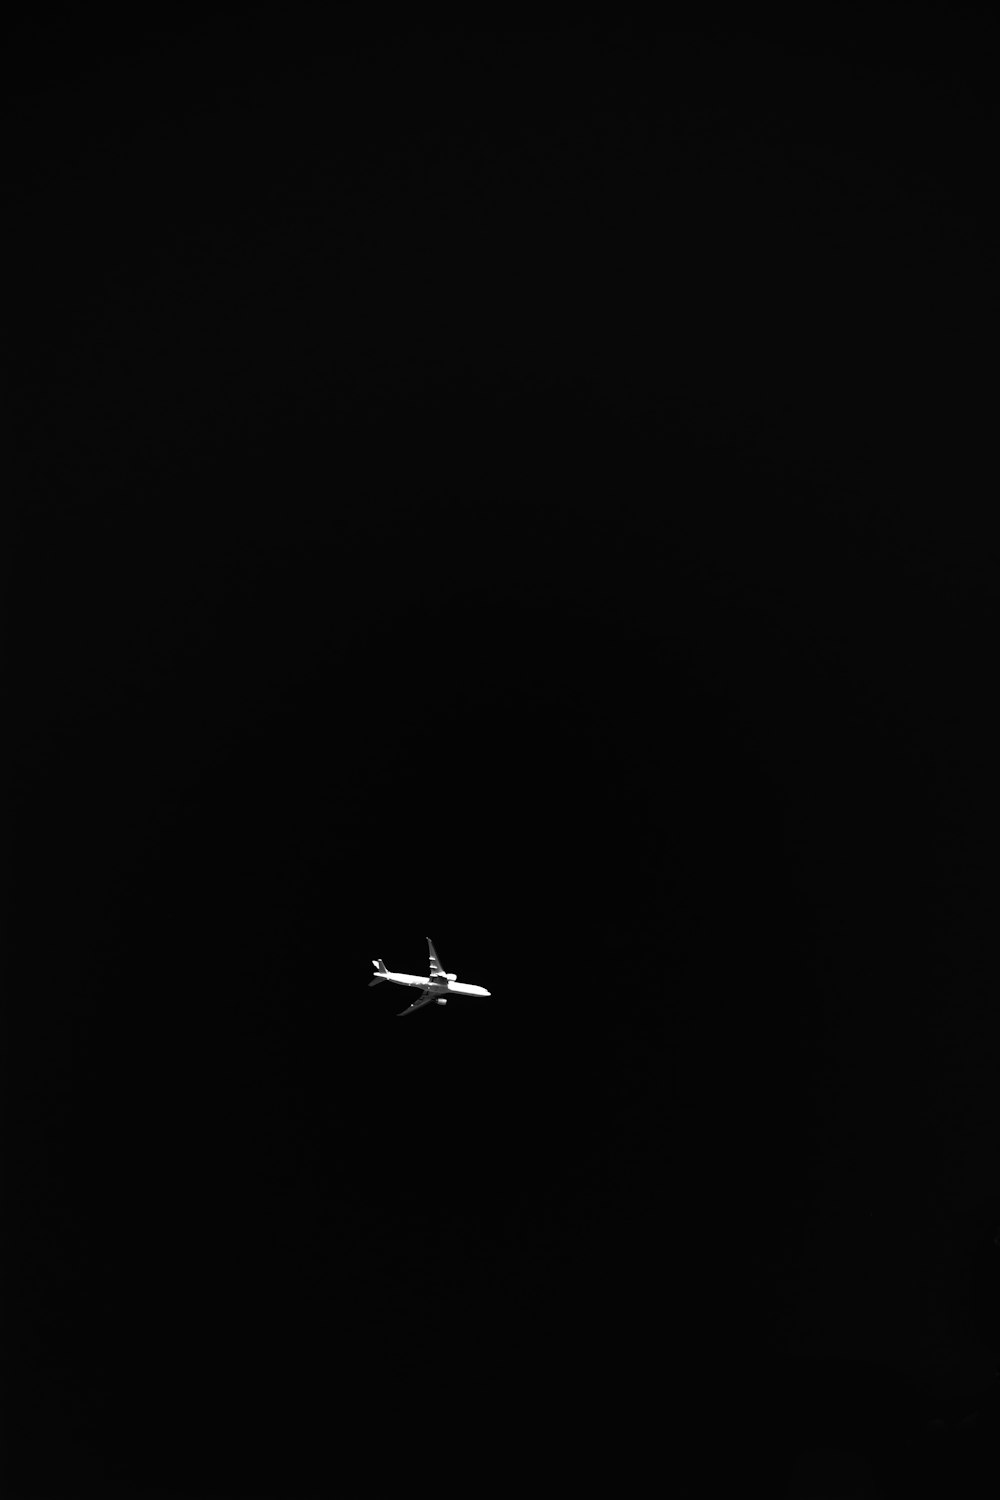 Ảnh Máy Bay Trắng: Khám phá những hình ảnh máy bay trắng đẹp mắt và đầy kỳ vọng. Với những chi tiết tuyệt đẹp và sự hoàn hảo của những chiếc máy bay trắng, hình ảnh này sẽ mang đến cho bạn cảm giác mạnh mẽ và đầy niềm tin. Hãy đắm chìm trong những hình ảnh đẹp và cảm nhận vẻ ngoài tuyệt đẹp của chúng.